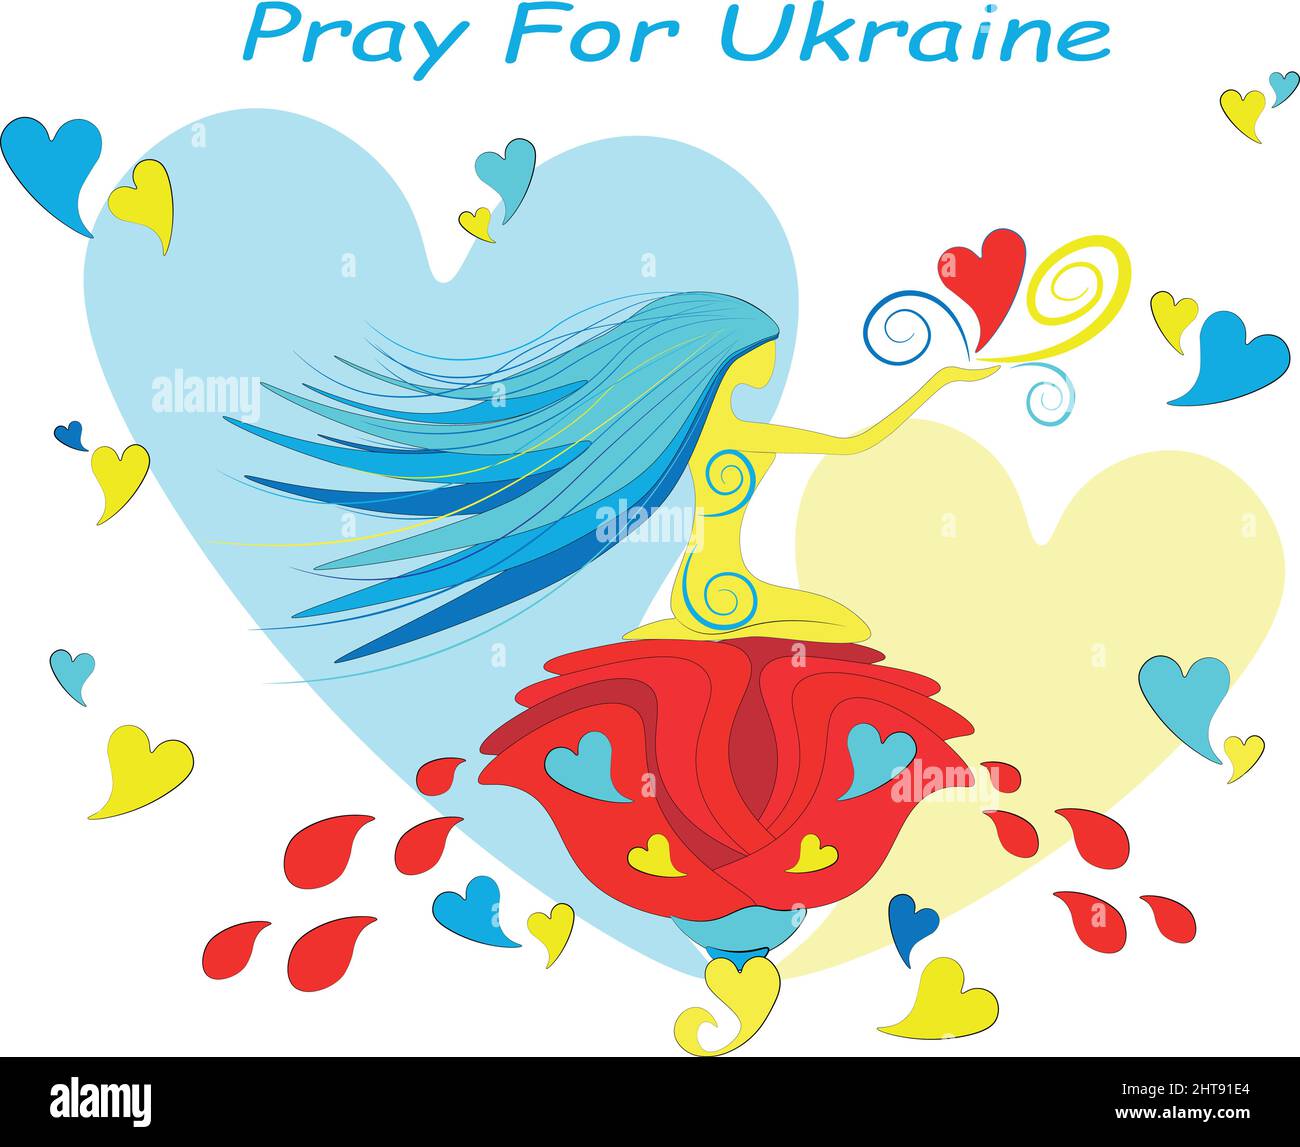 Illustration des Gebets für die Ukraine. Die Ukraine ist eine sanfte Frau, sie ist erfüllt von reinen Herzen ihres Volkes und braucht die Unterstützung der ganzen Welt. L Stock Vektor